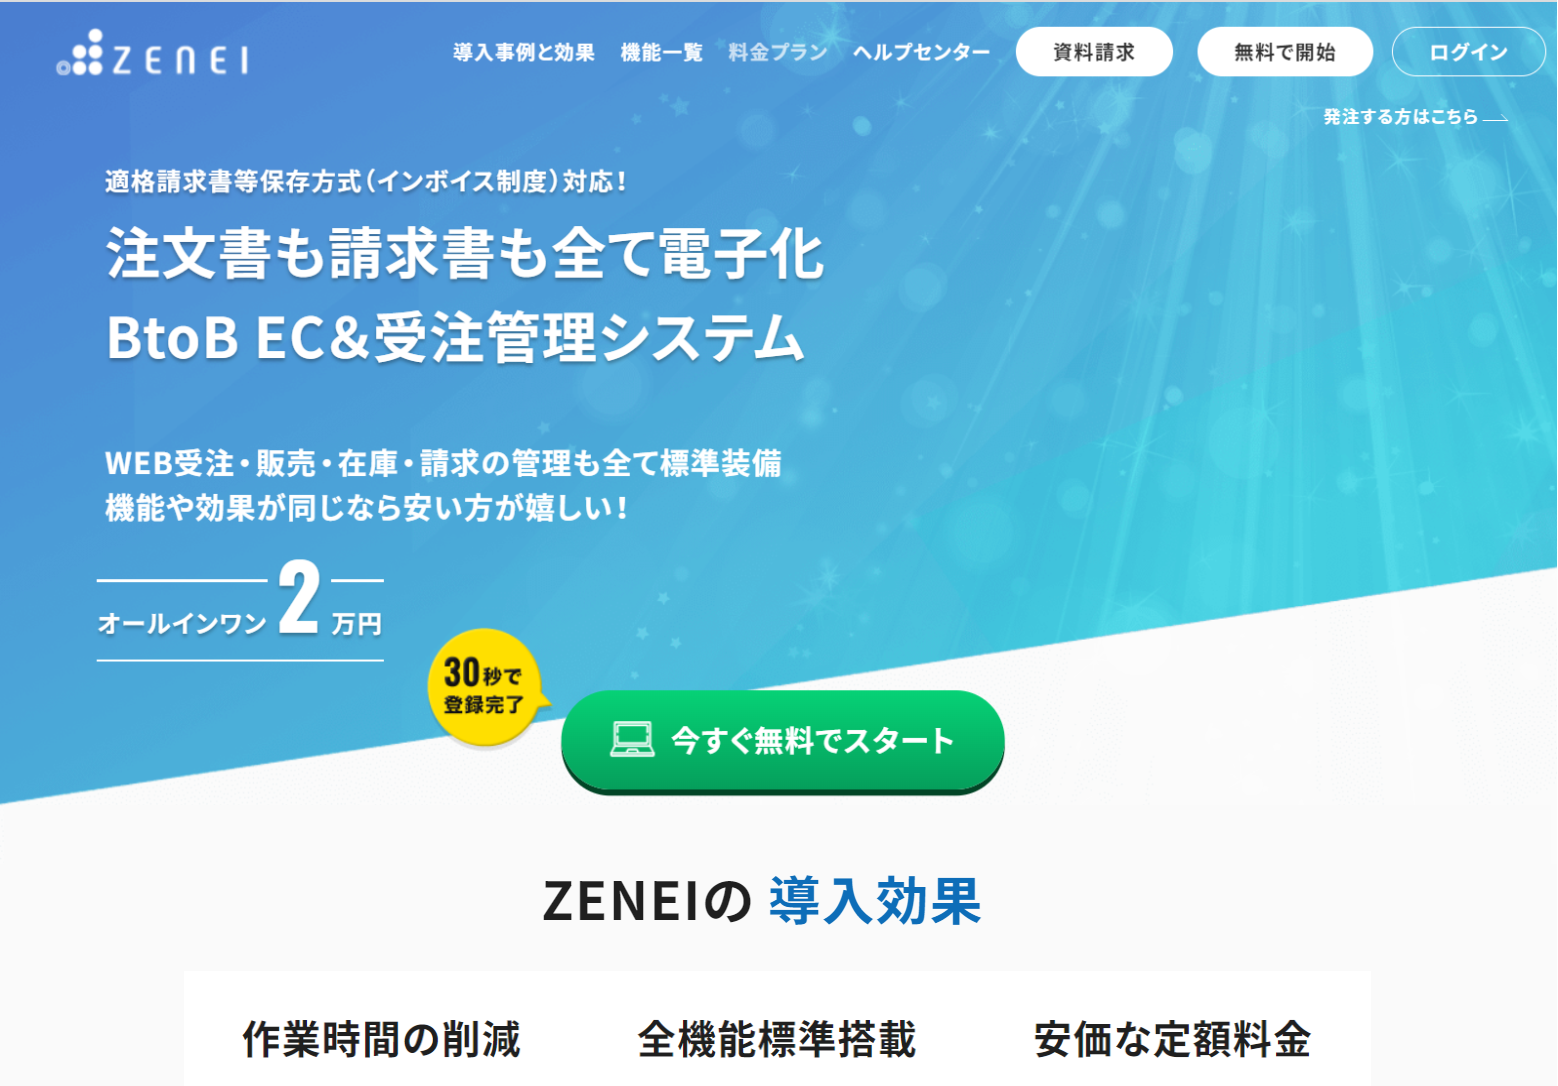 自社独自プロダクト『ZENEI』（ゼンエイ）の開発・提供及びITコンサルティングや受託開発を手掛ける。